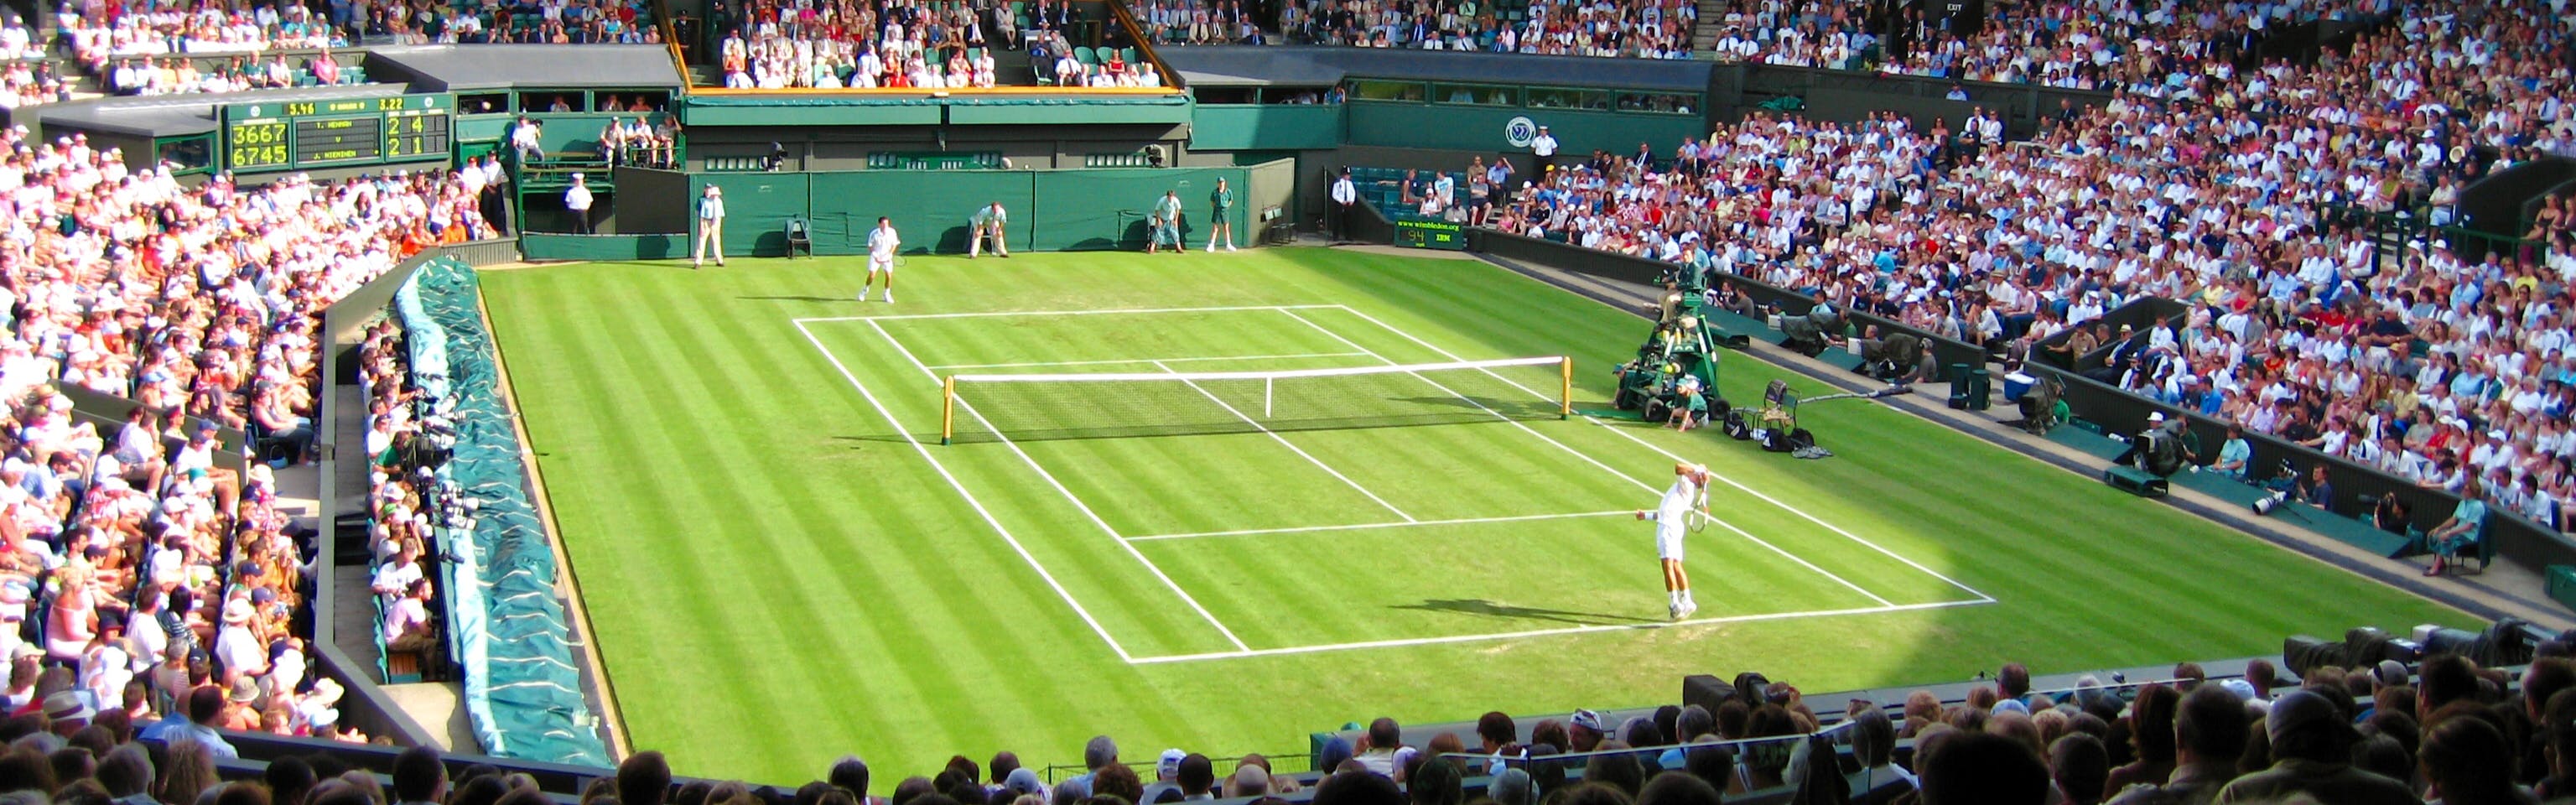 The Center Court at Wimbledon. 